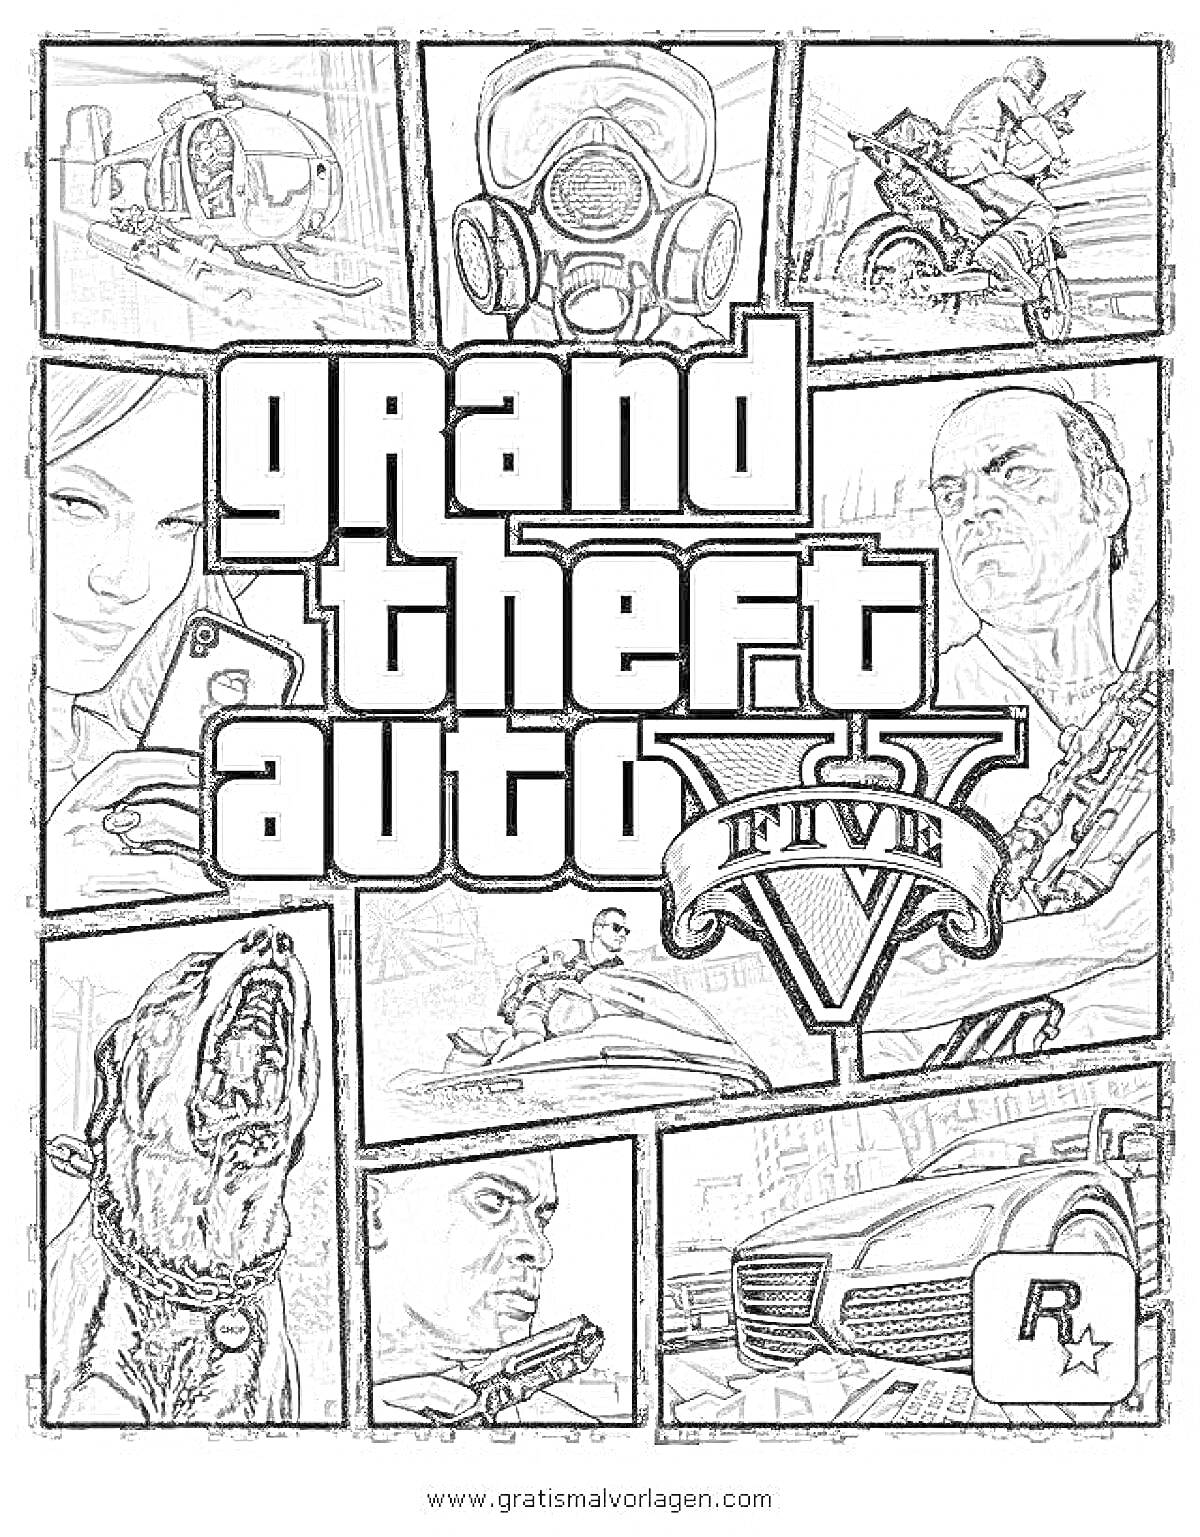 Раскраска Обложка GTA V с изображением персонажей, вертолета, собаки, автомобиля, водного транспорта, газовой маски и логотипа Rockstar Games